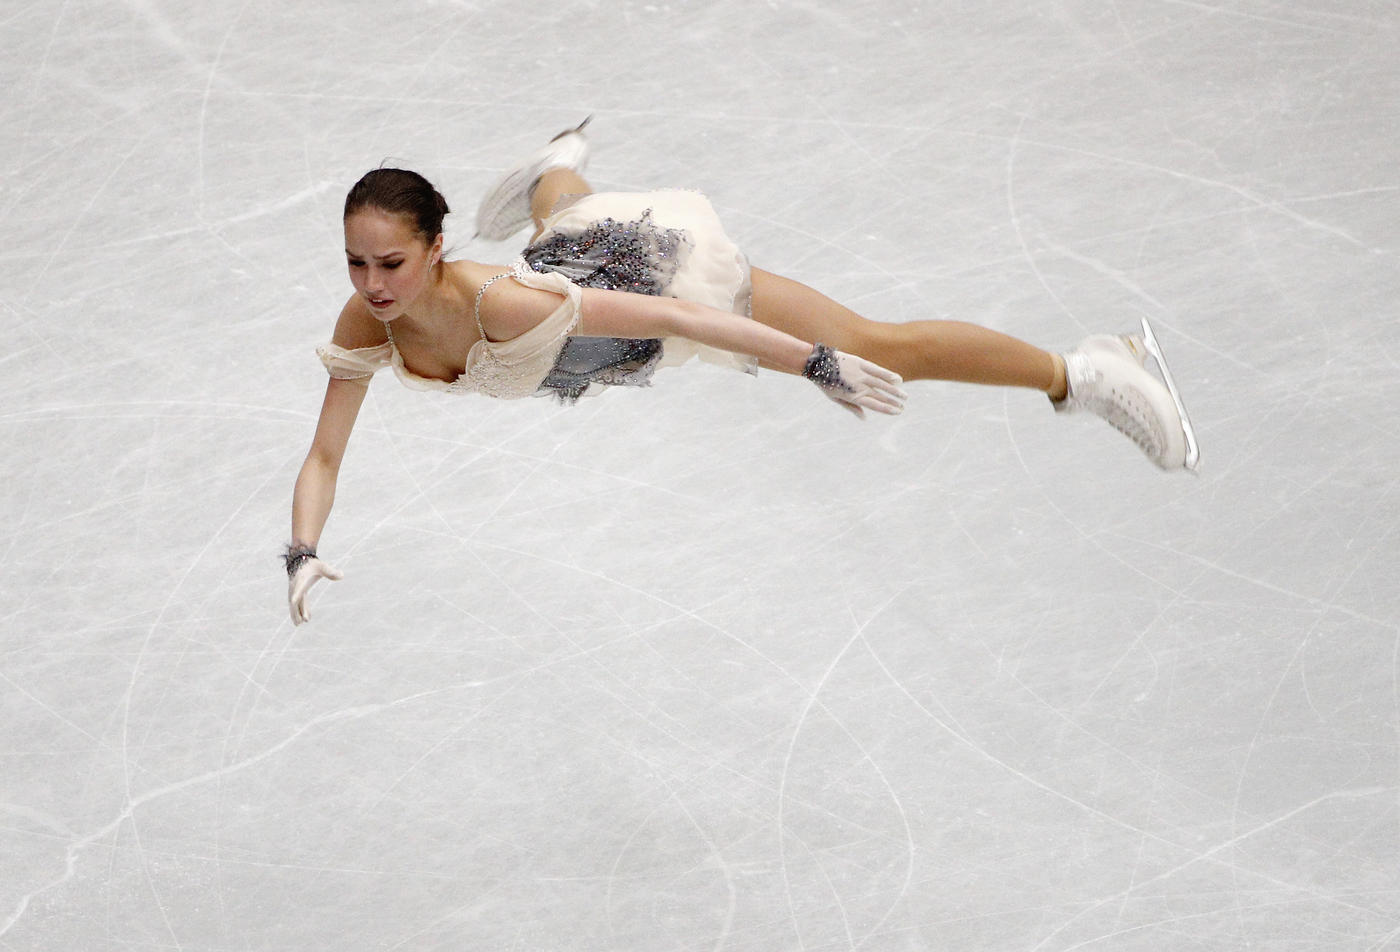 Загитова выиграла короткую программу чемпионата мира и обновила личный рекорд. Медведева должна быть расстроена - фото